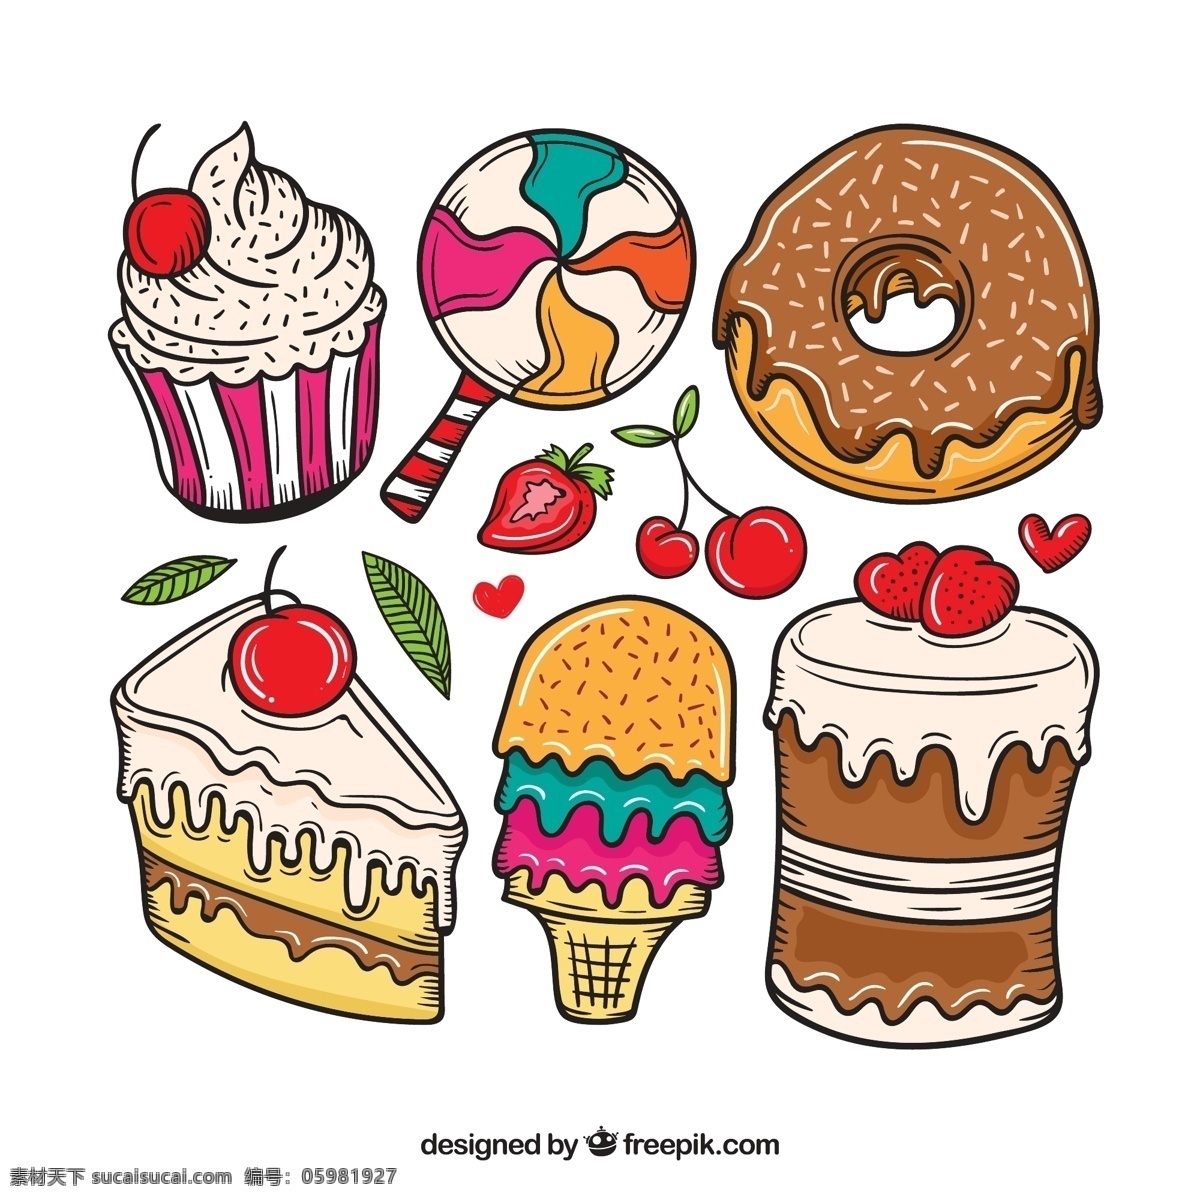 卡通甜点 甜点 棒棒糖 甜甜圈 蛋糕 草莓 樱桃 冰淇淋 矢量卡通 生活百科 餐饮美食